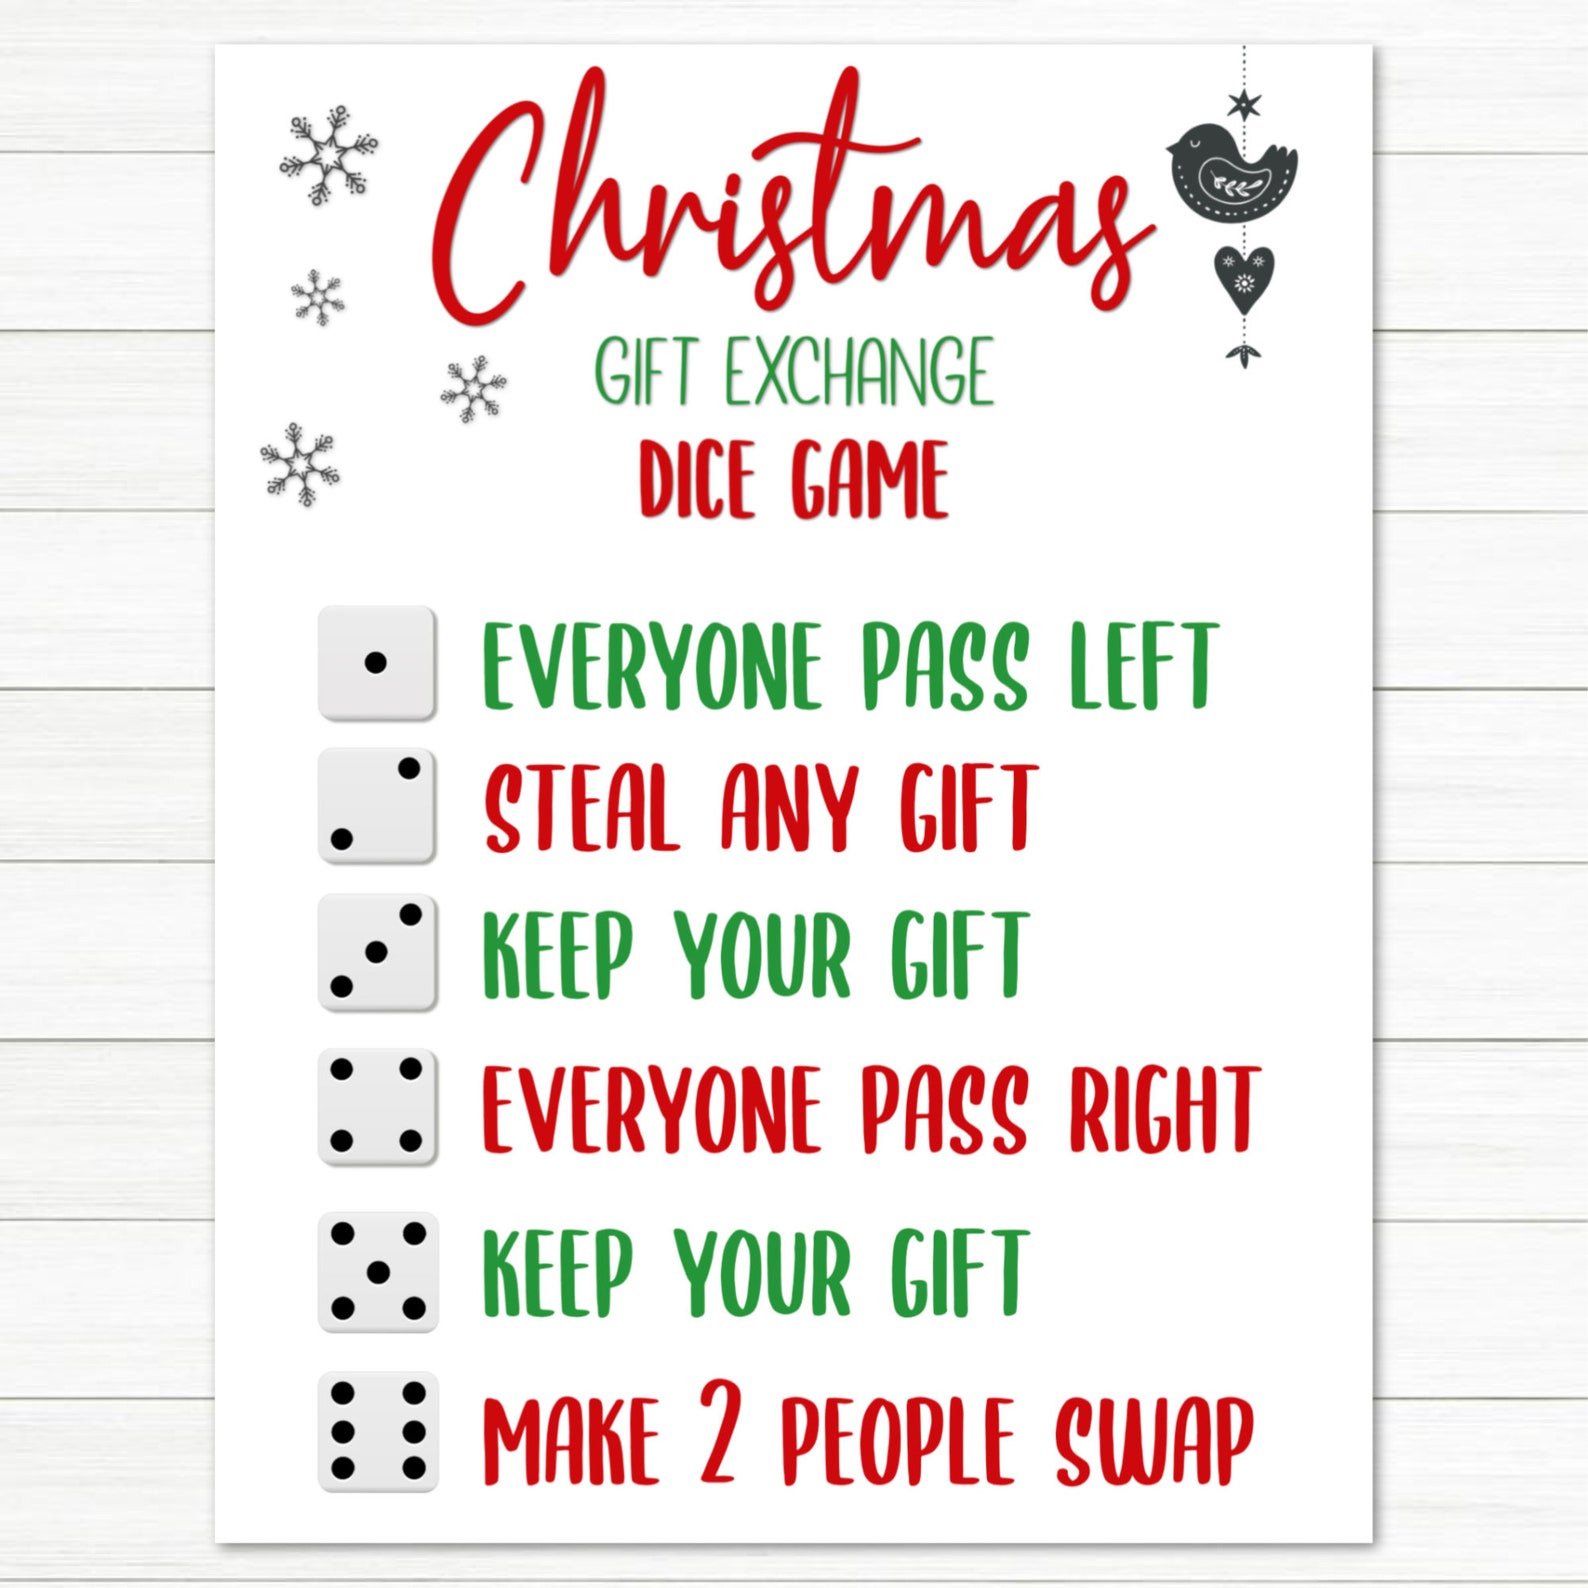 Christmas Dice Game Rules Printable - Printable World Holiday